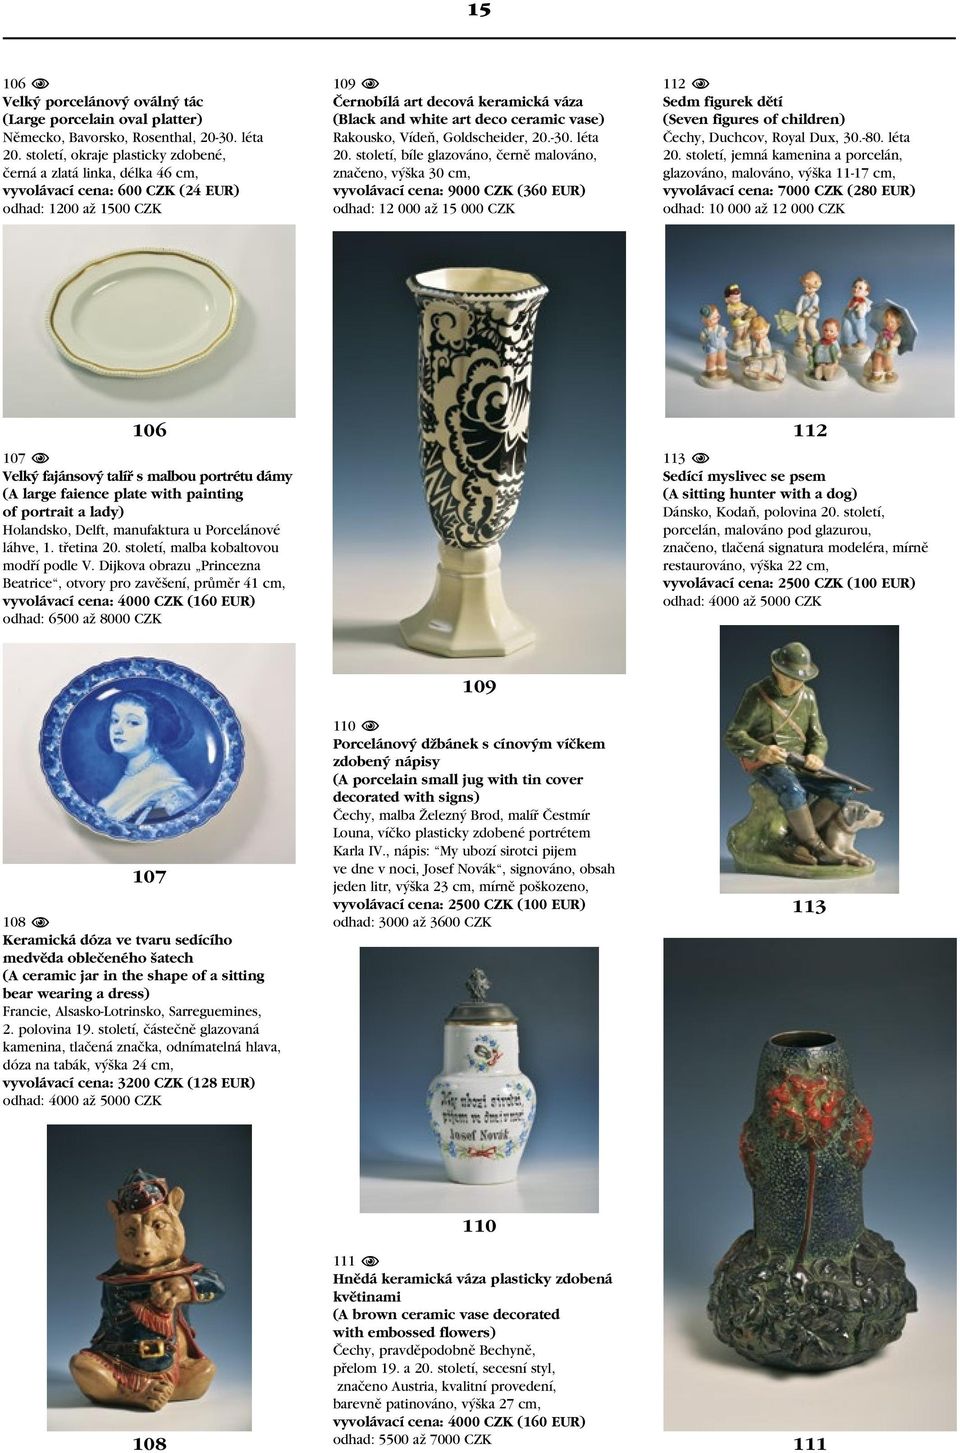 ceramic vase) Rakousko, Vídeň, Goldscheider, 20.-30. léta 20.